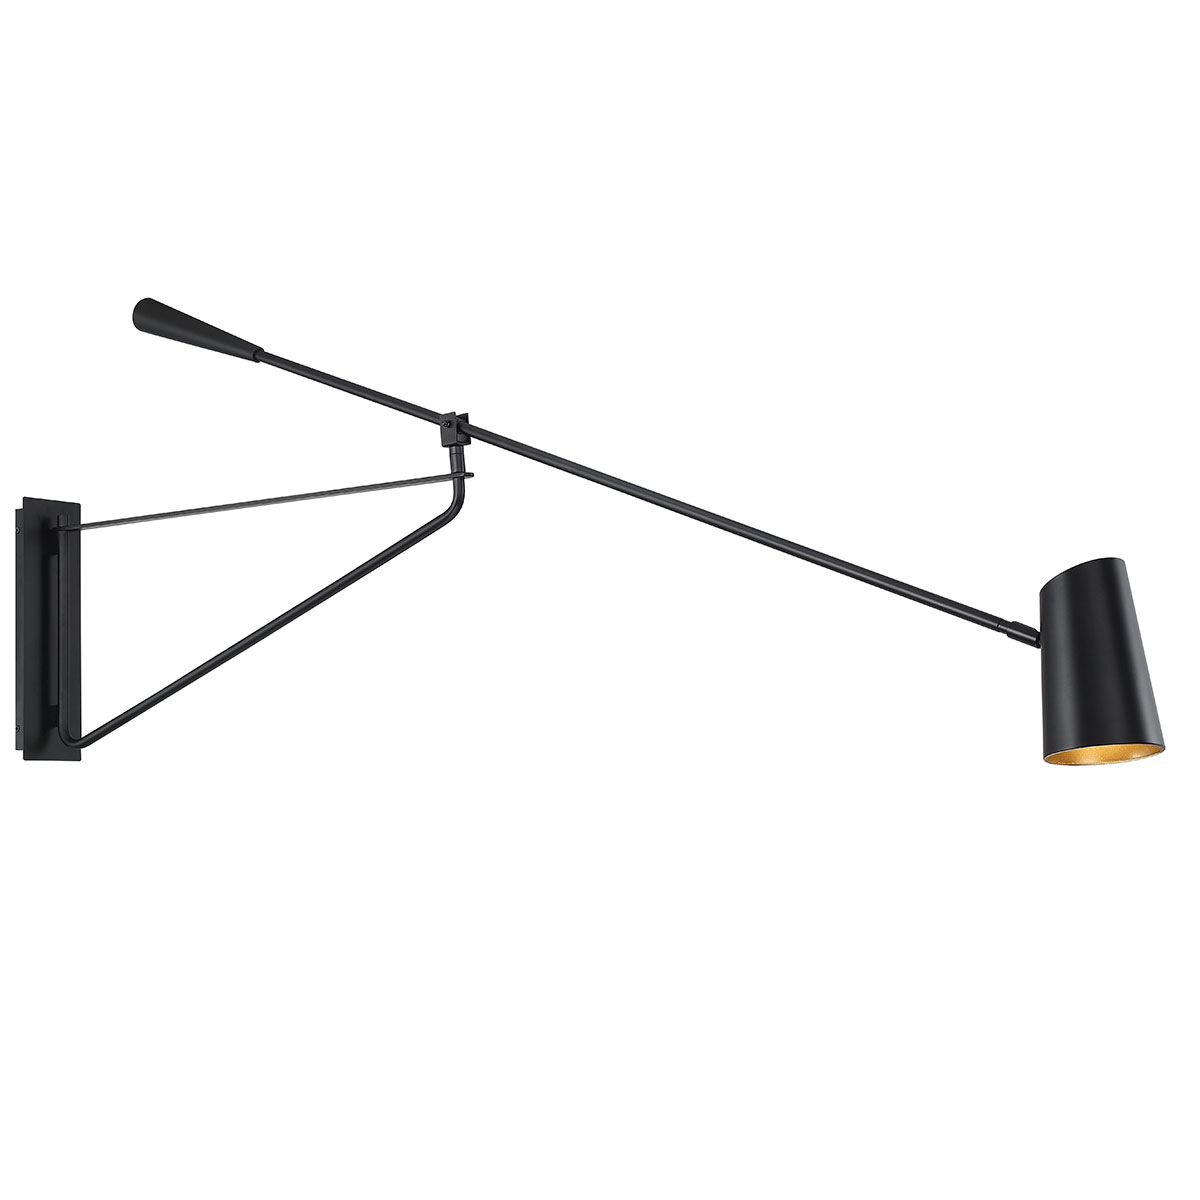 Stylus Swing Arm Wall Sconce By Modern, Modern Swing Arm Lamp